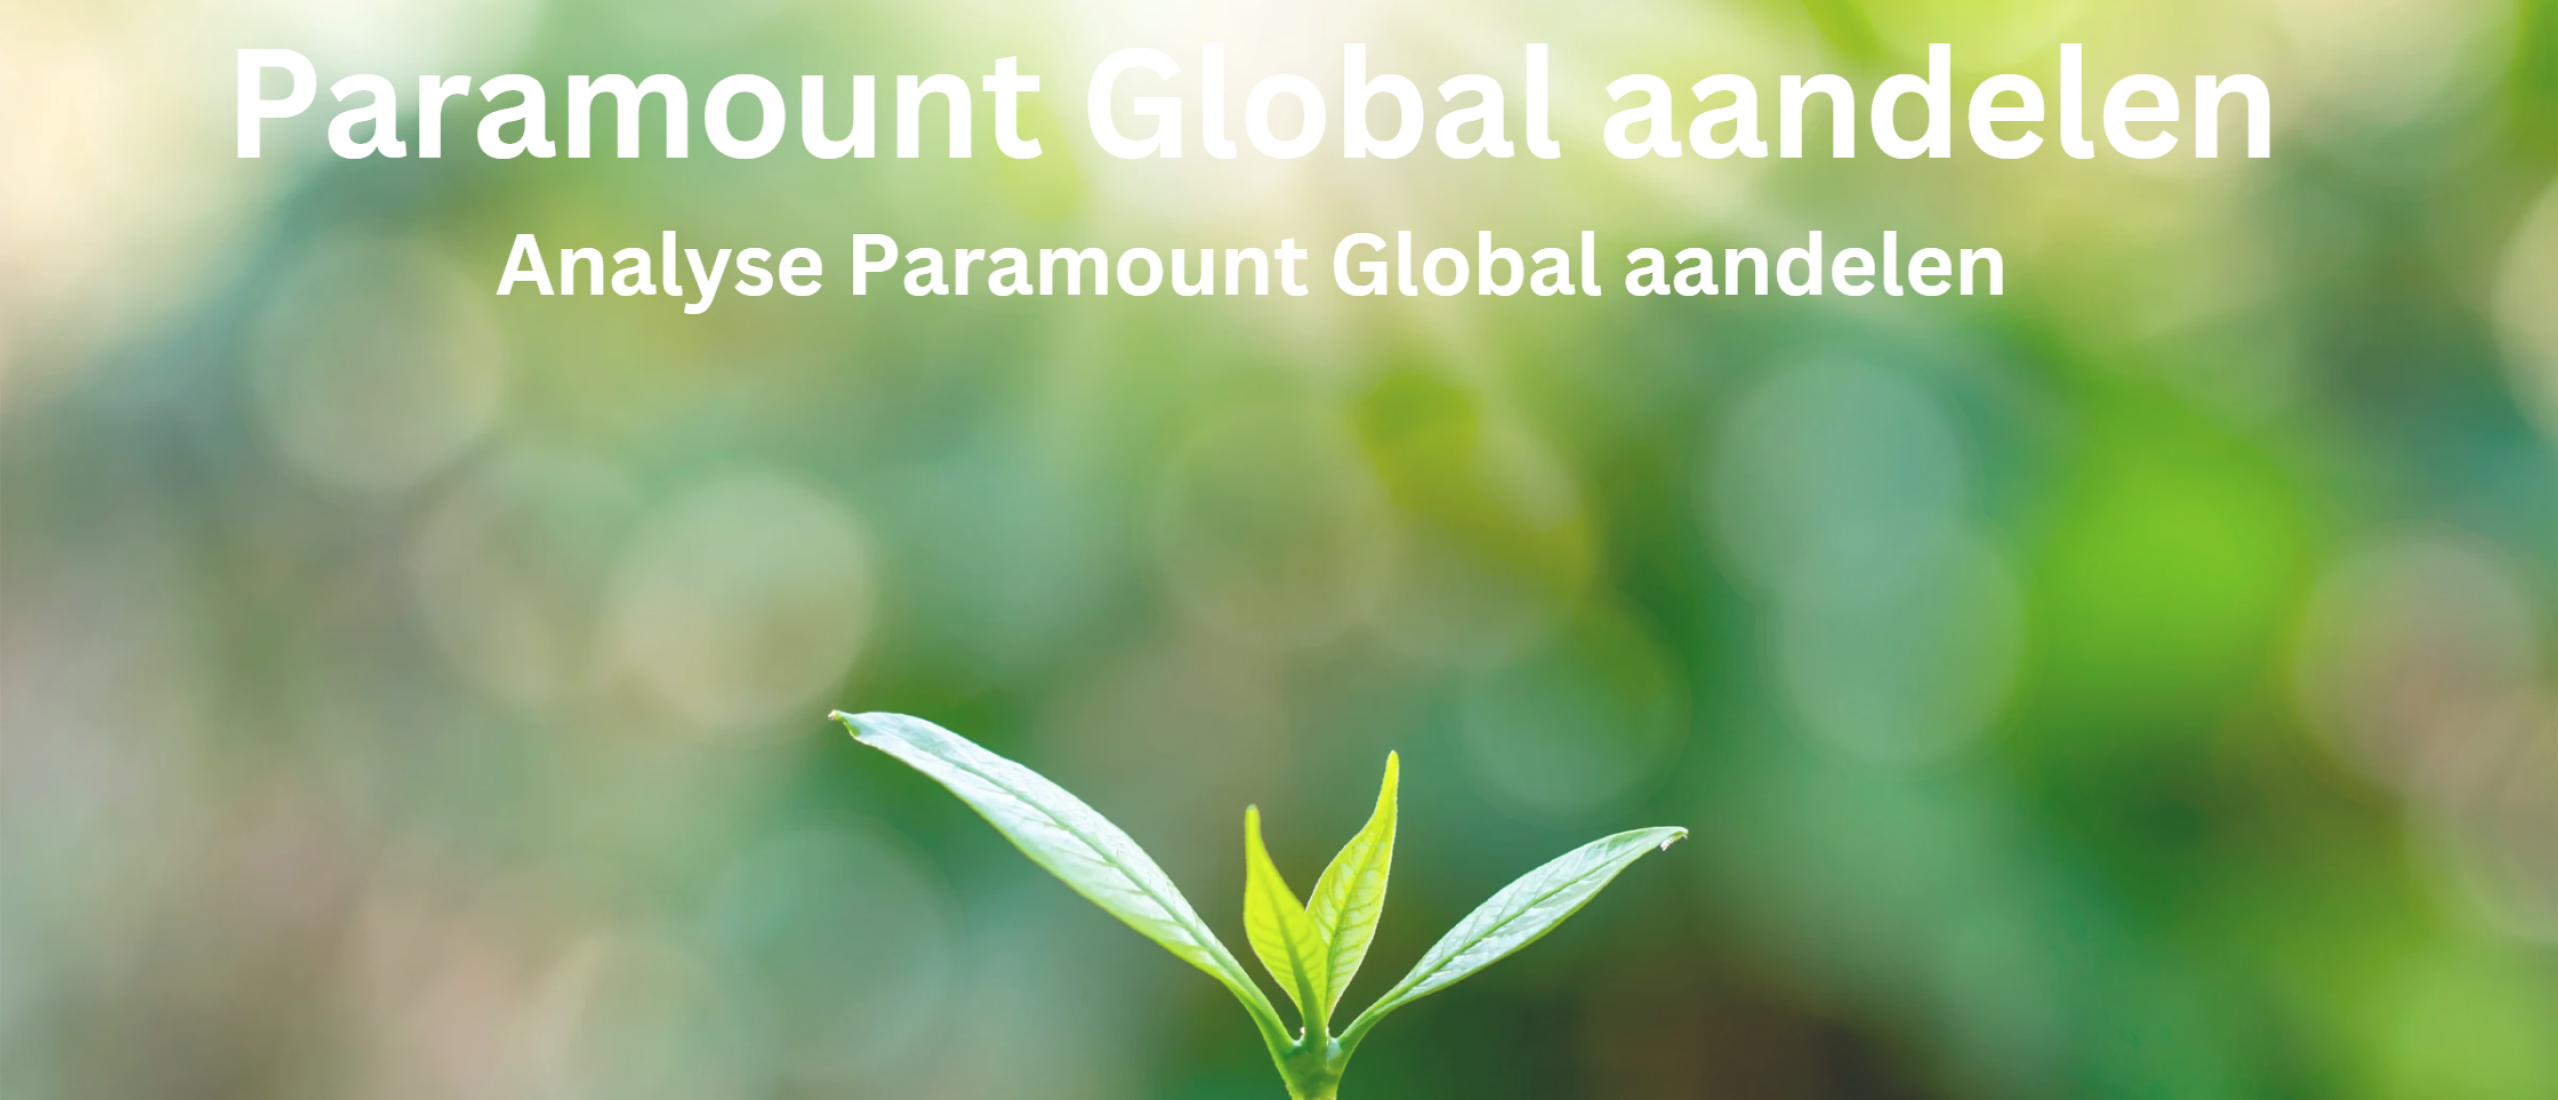 paramount-global-aandelen-kopen